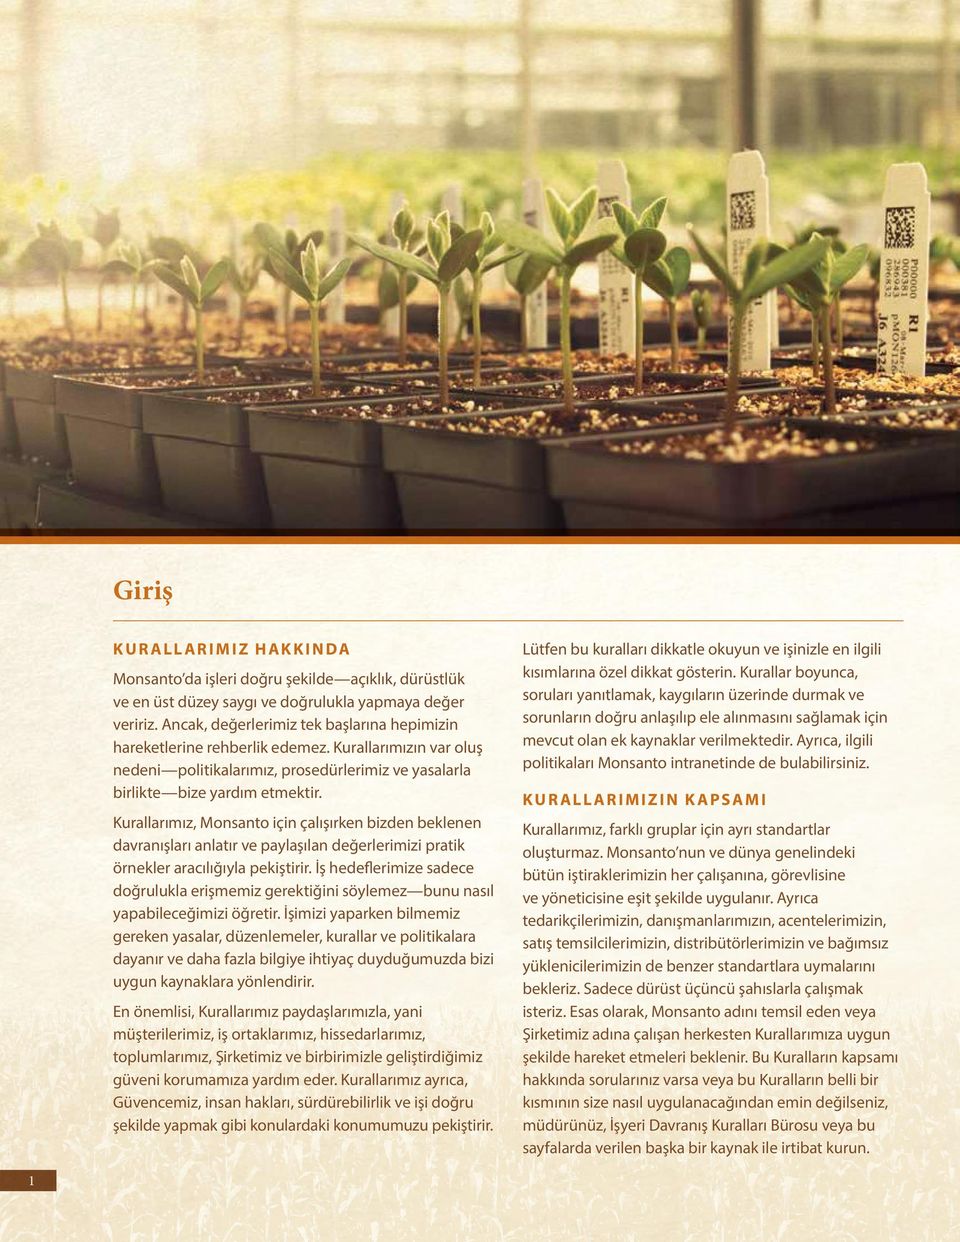 Kurallarımız, Monsanto için çalışırken bizden beklenen davranışları anlatır ve paylaşılan değerlerimizi pratik örnekler aracılığıyla pekiştirir.